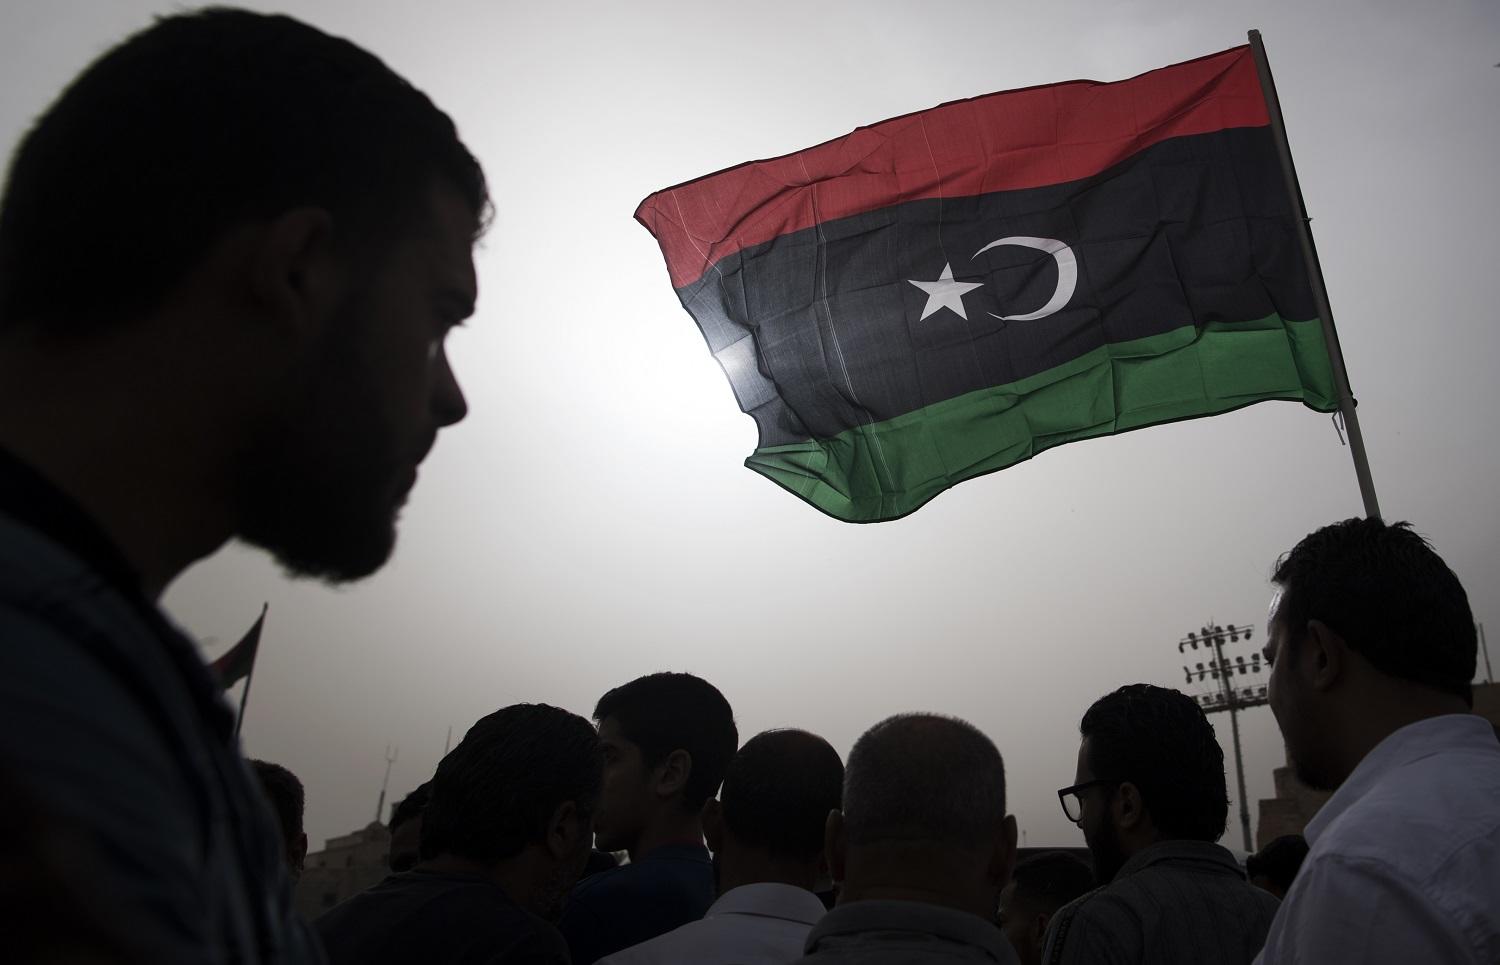 مقاتلون ينتمون لقوات الحكومة المدعومة دوليا يرفعون علم ليبيا خلال جنازة أحد المقاتلين، 24 أبريل 2019. أ ف ب 